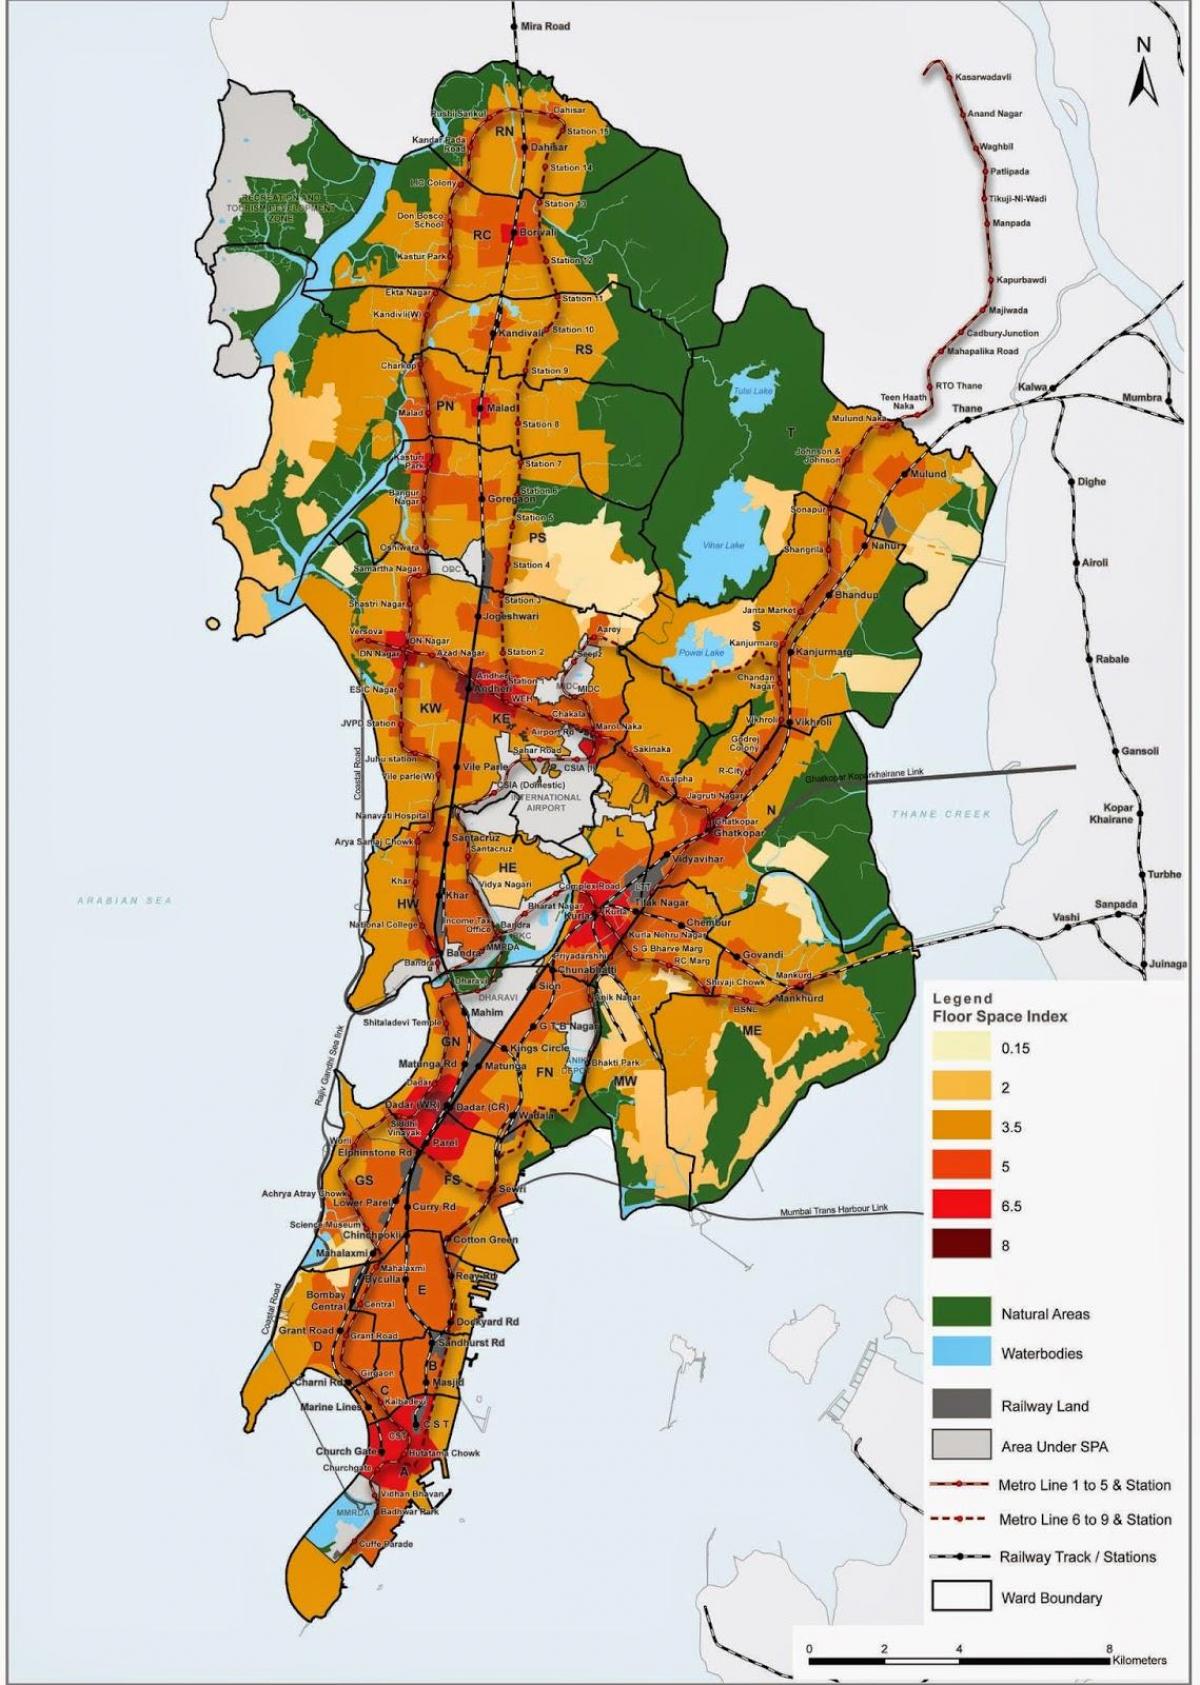 CRZ map of Mumbai